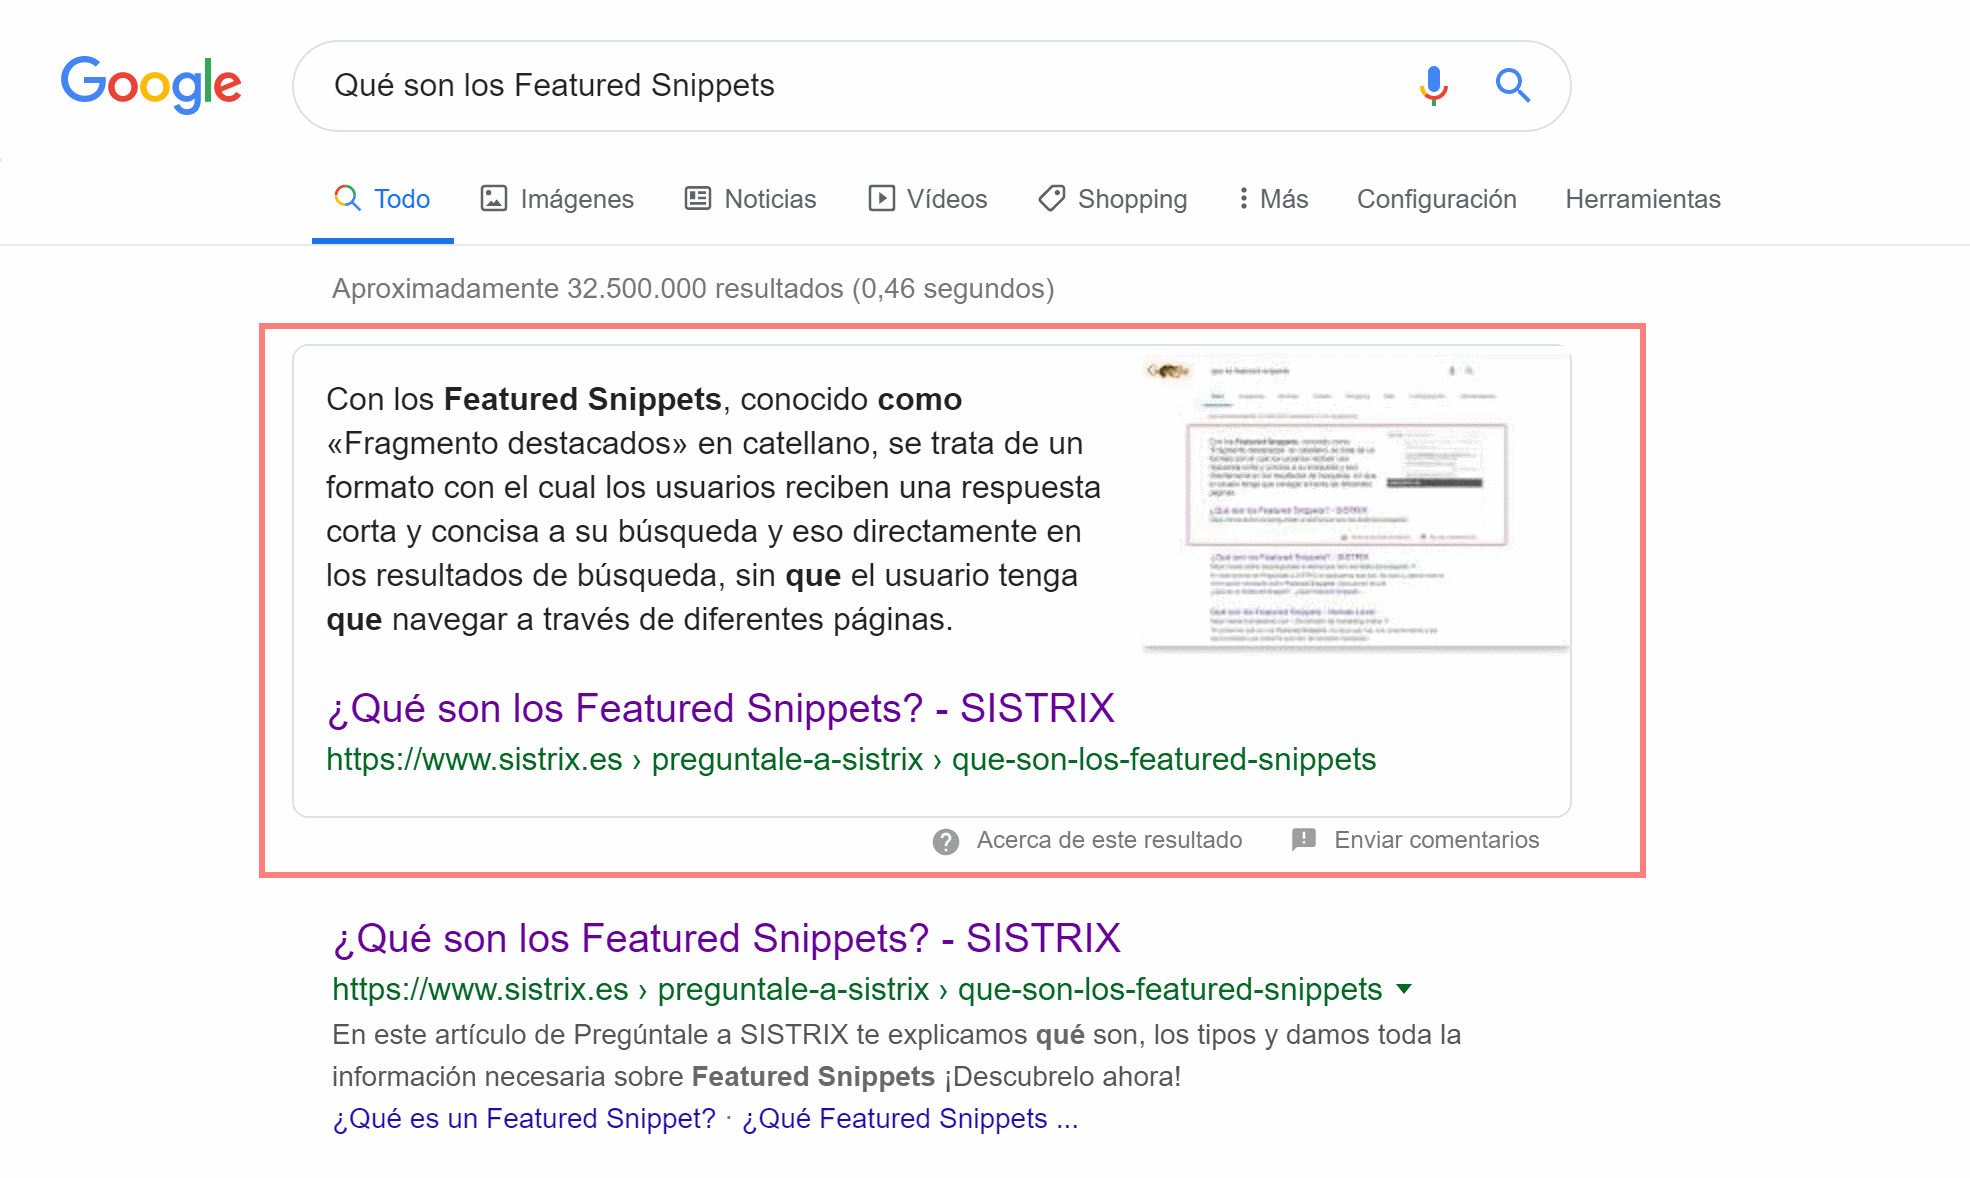 Resultado de búsqueda en Google con integración de un Featured Snippet